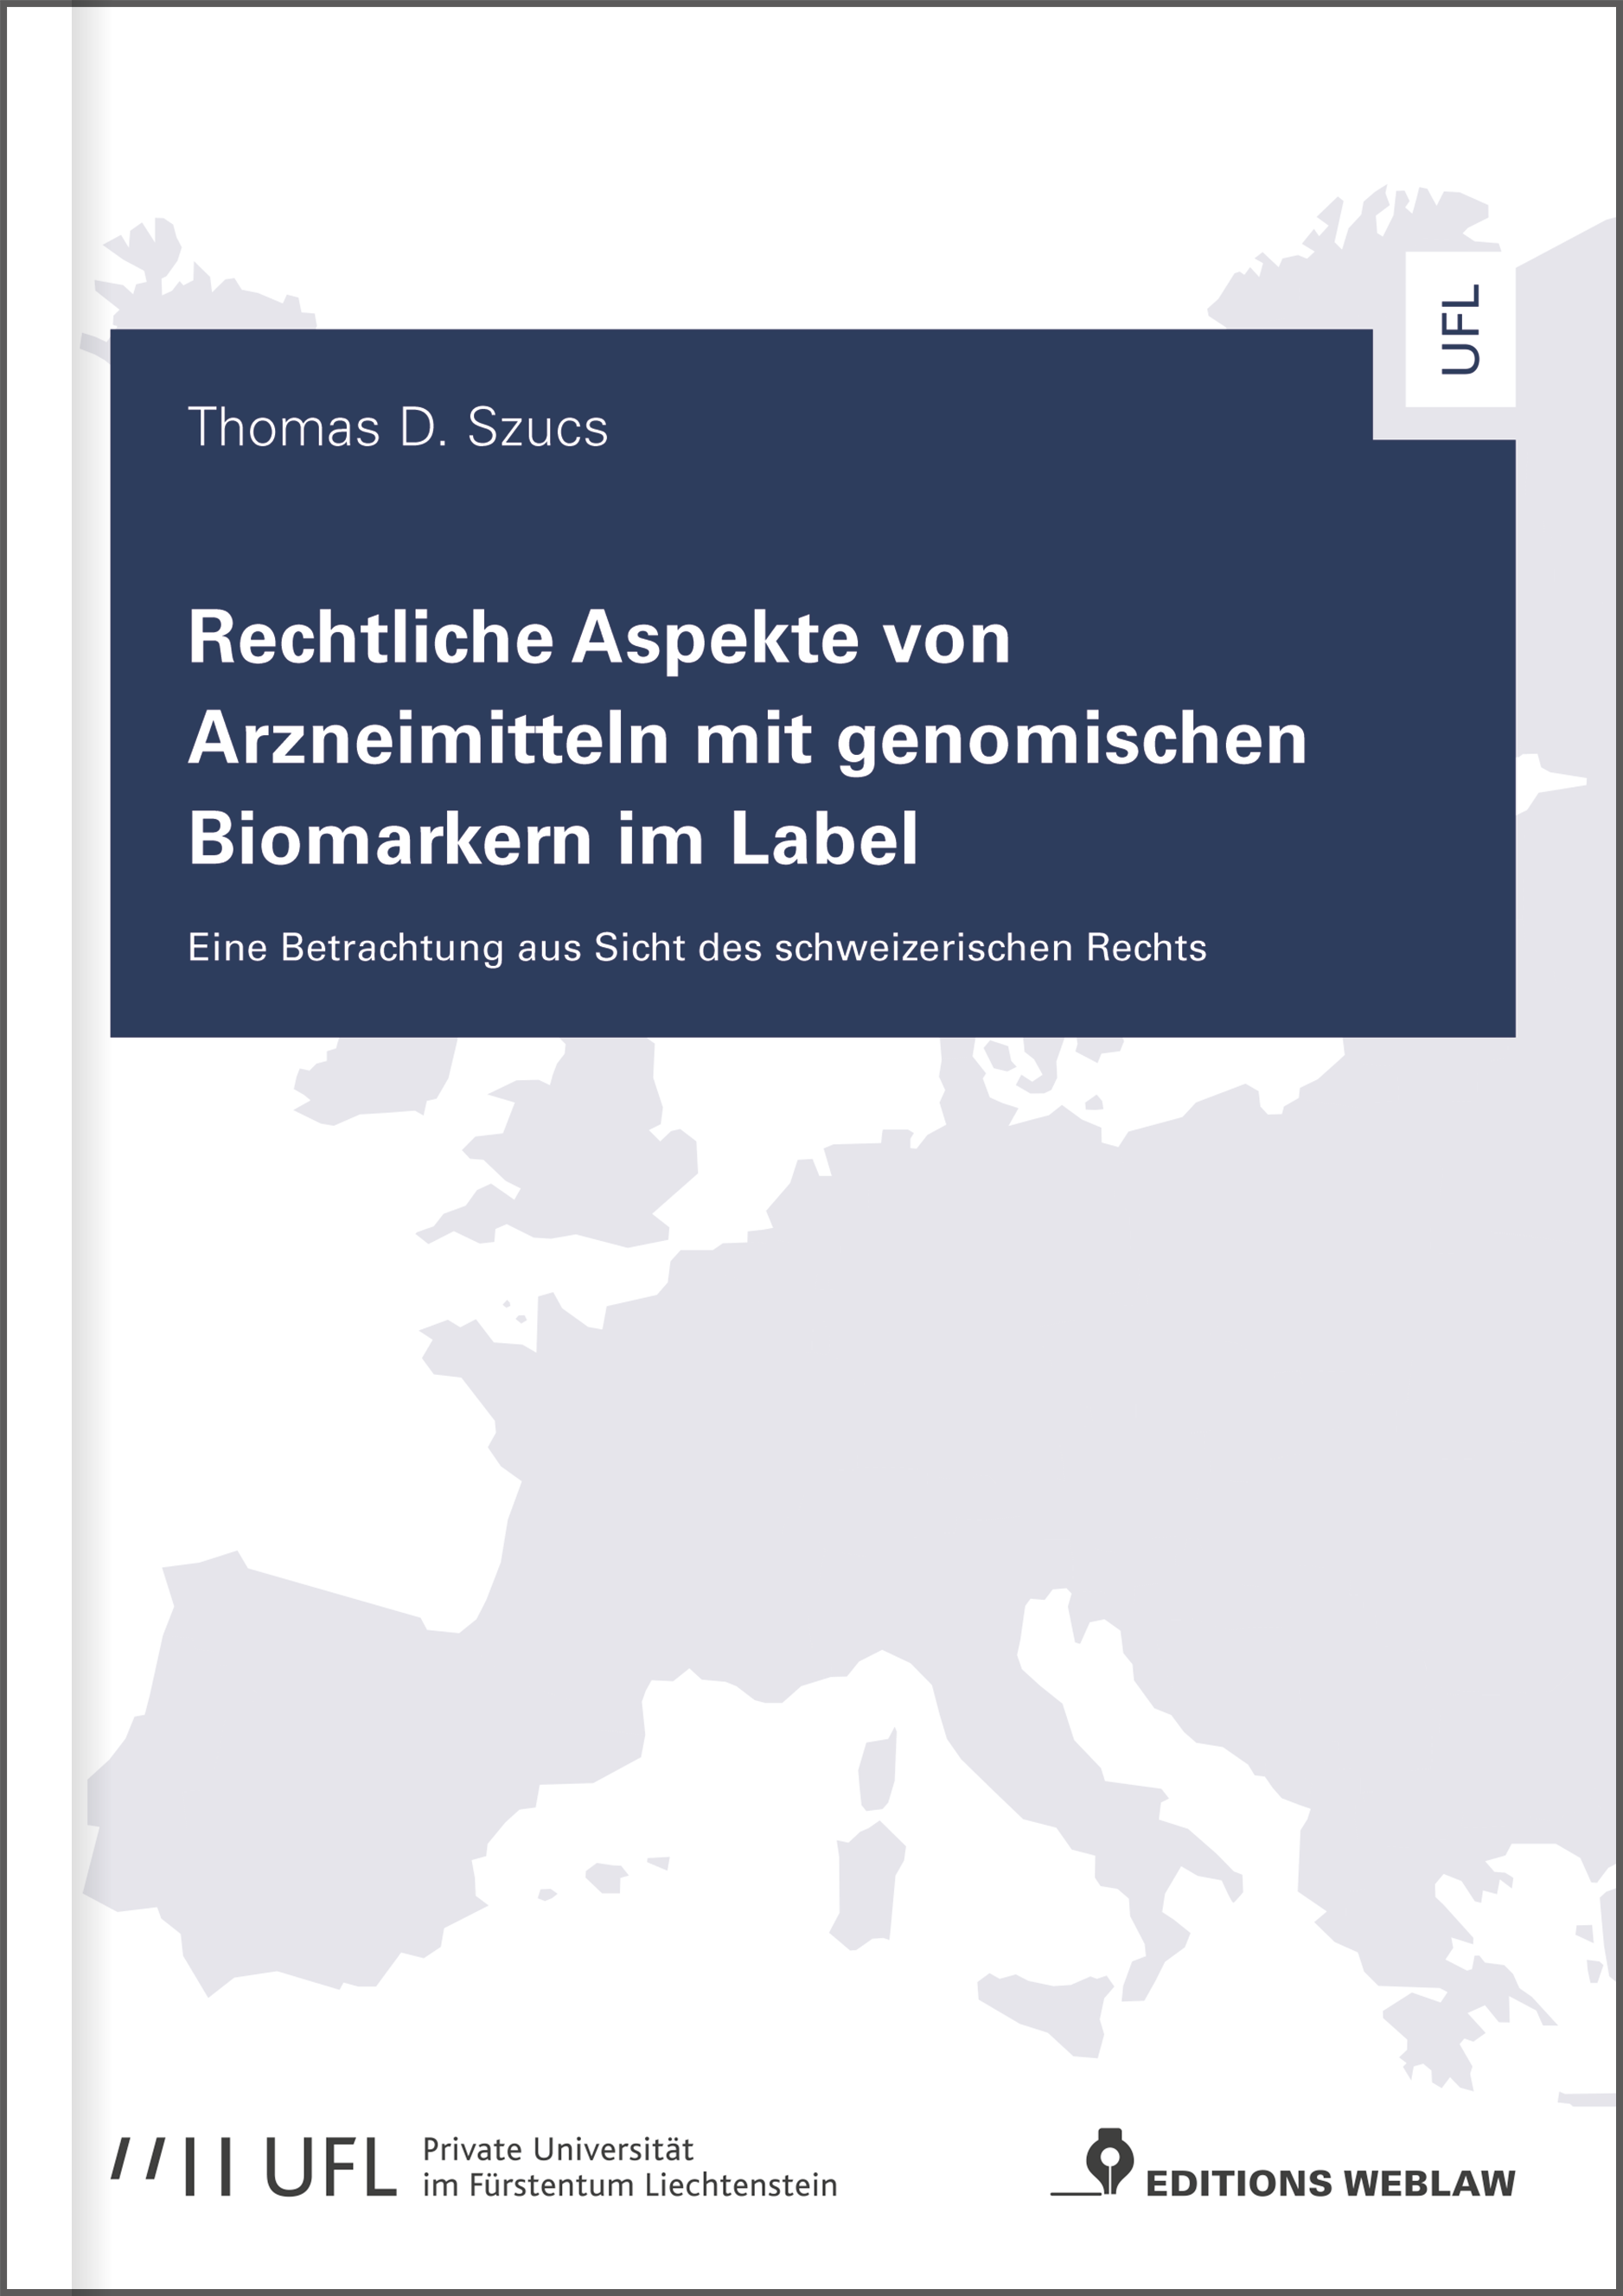 Nouveau aux Editions Weblaw : Thomas D. Szucs, Rechtliche Aspekte von Arzneimitteln mit genomischen Biomarkern im Label